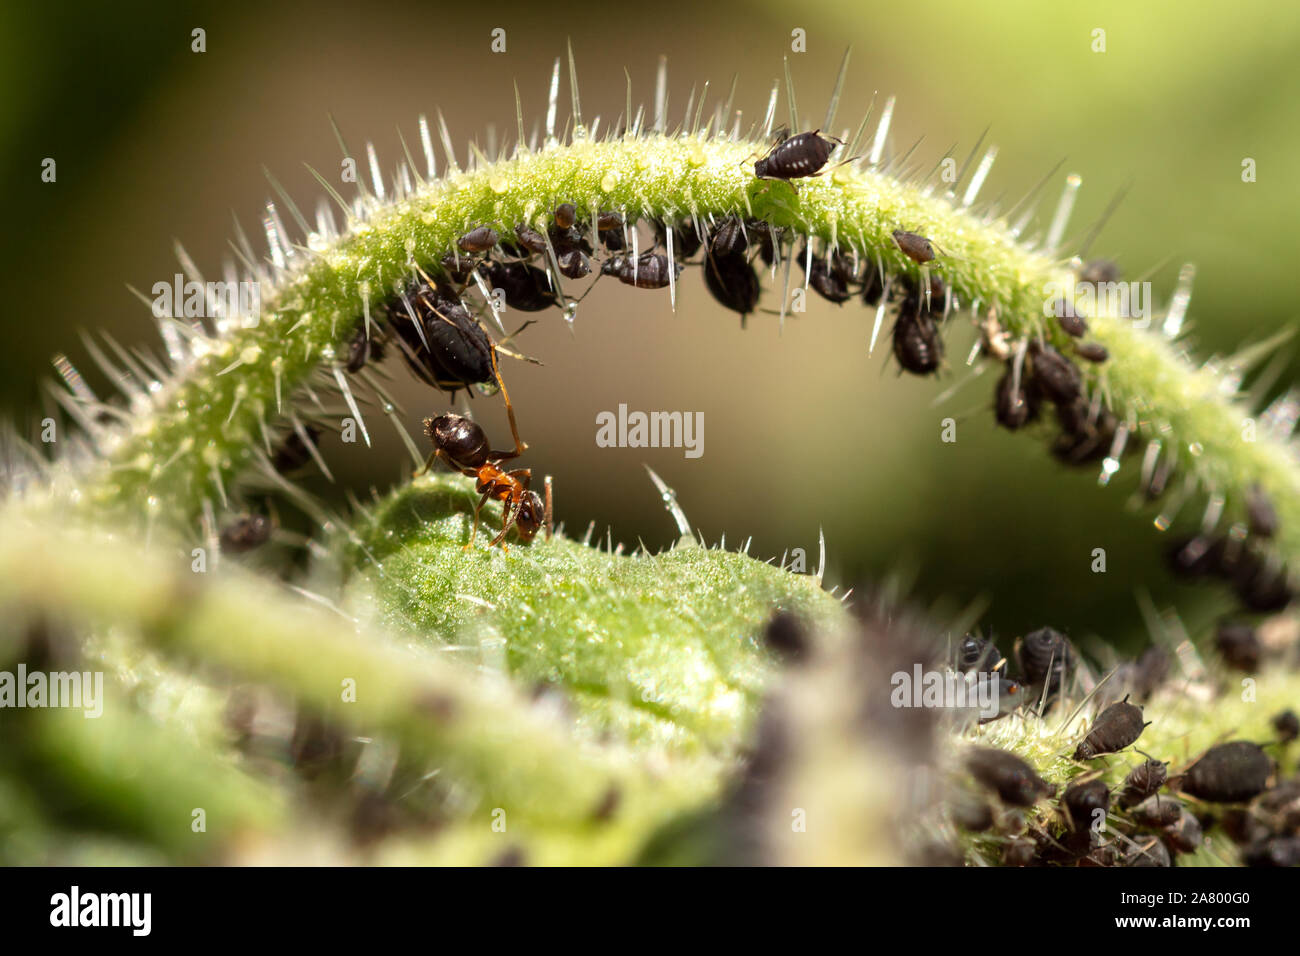 Los áfidos y hormigas sobre una planta verde, simbiosis y cohabitan fauna de insectos, closeup Foto de stock